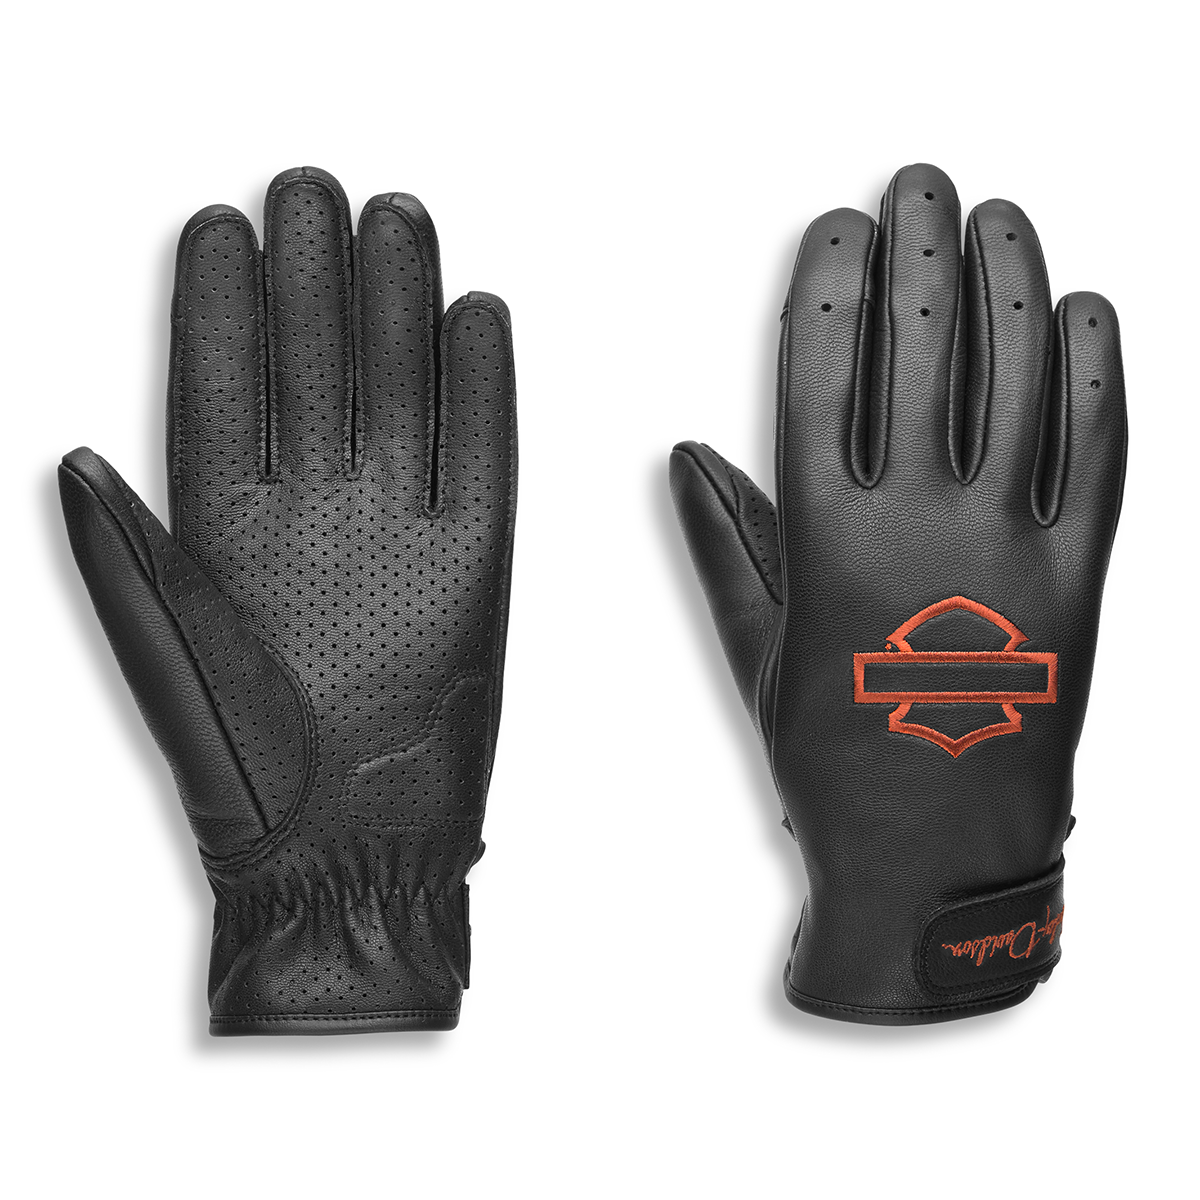 Harley-Davidson I-94 Women's Full Finger Leather Glove